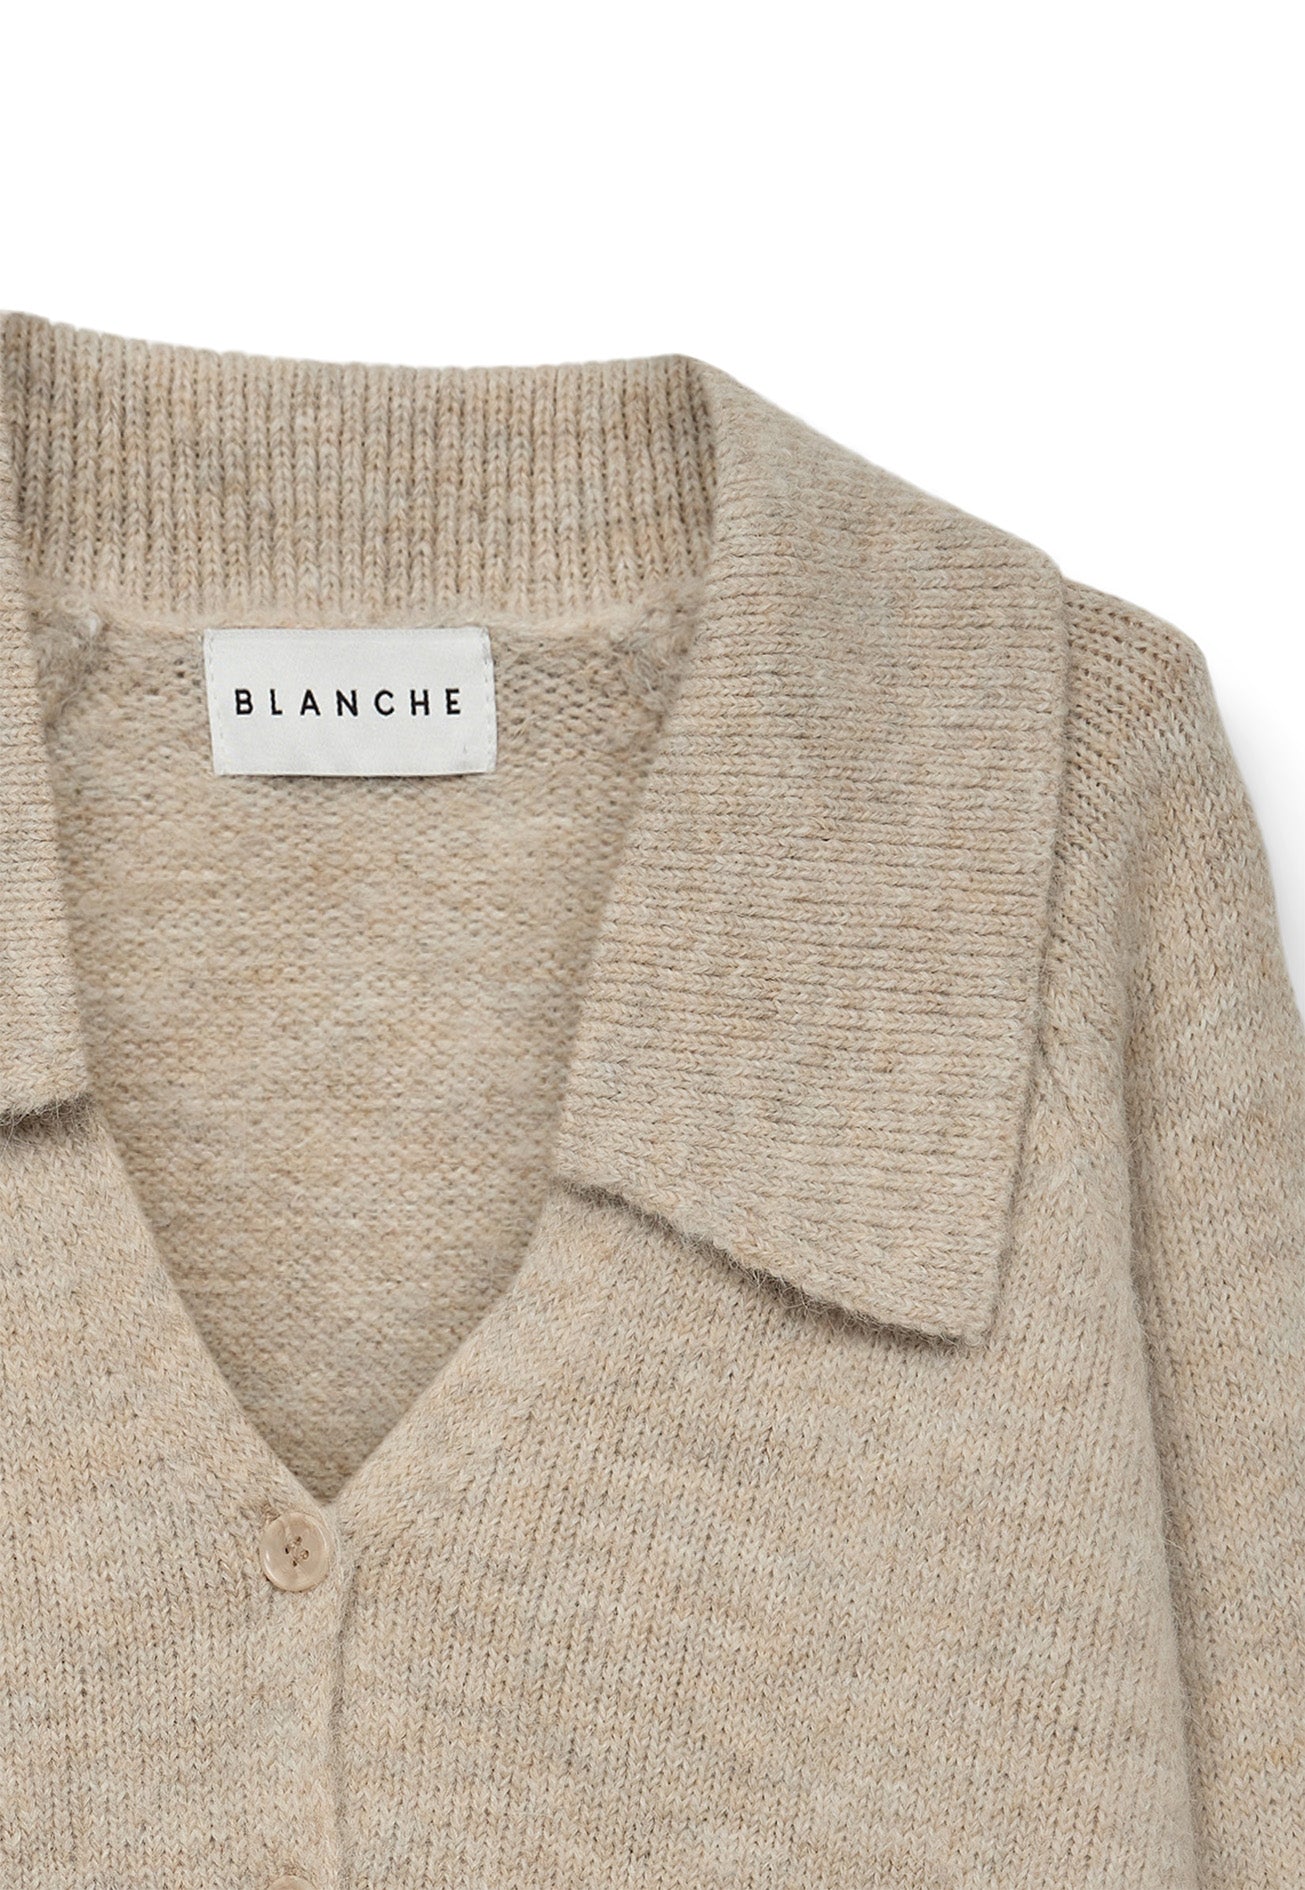 BLANCHE Copenhagen Laurel-BL cardigan Knitwear 1306 Oxford Tan